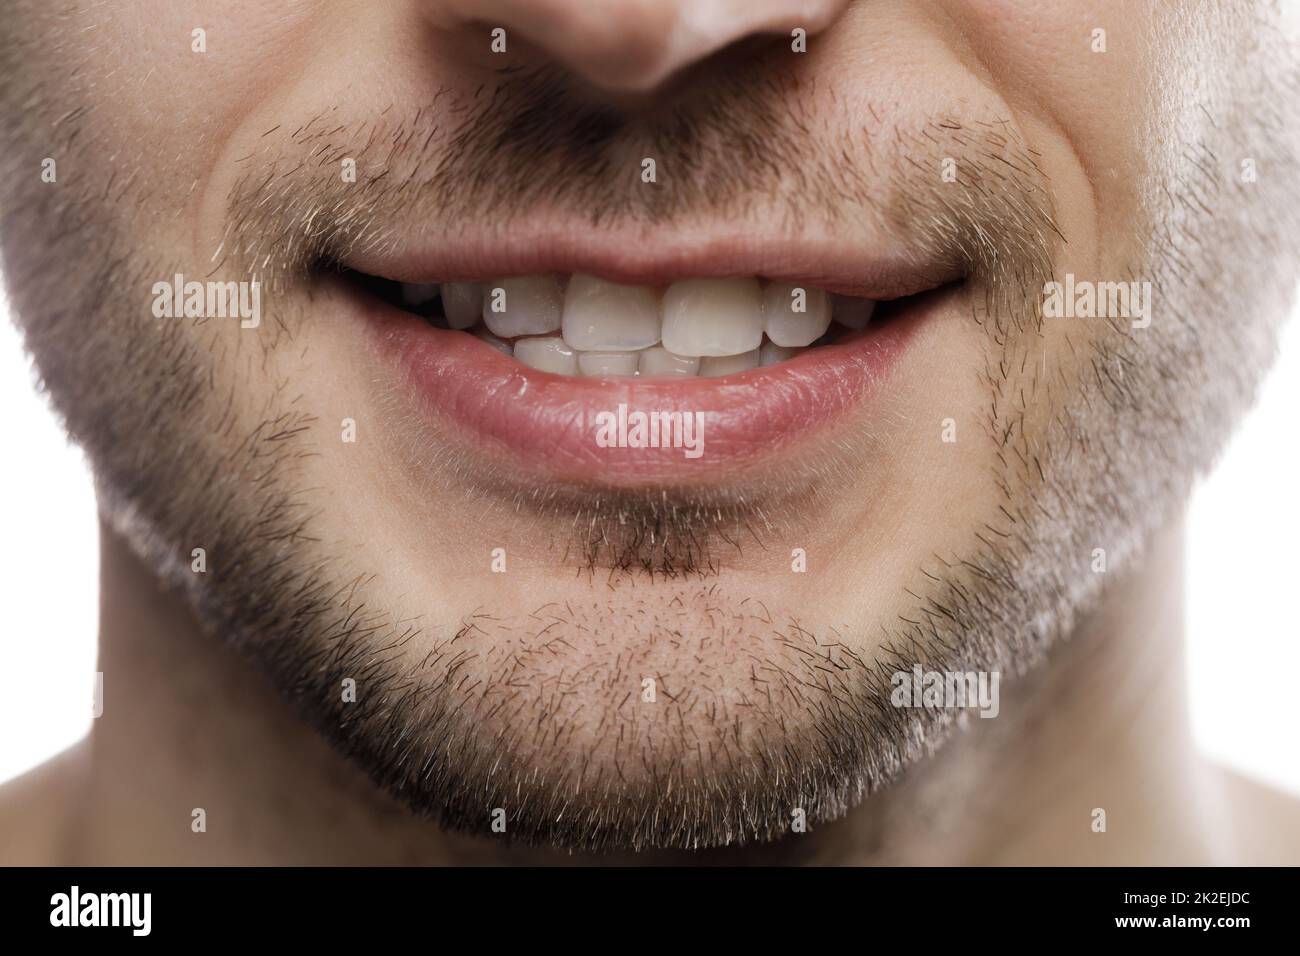 Nahaufnahme des männlichen Mundes mit Asmile Stockfoto